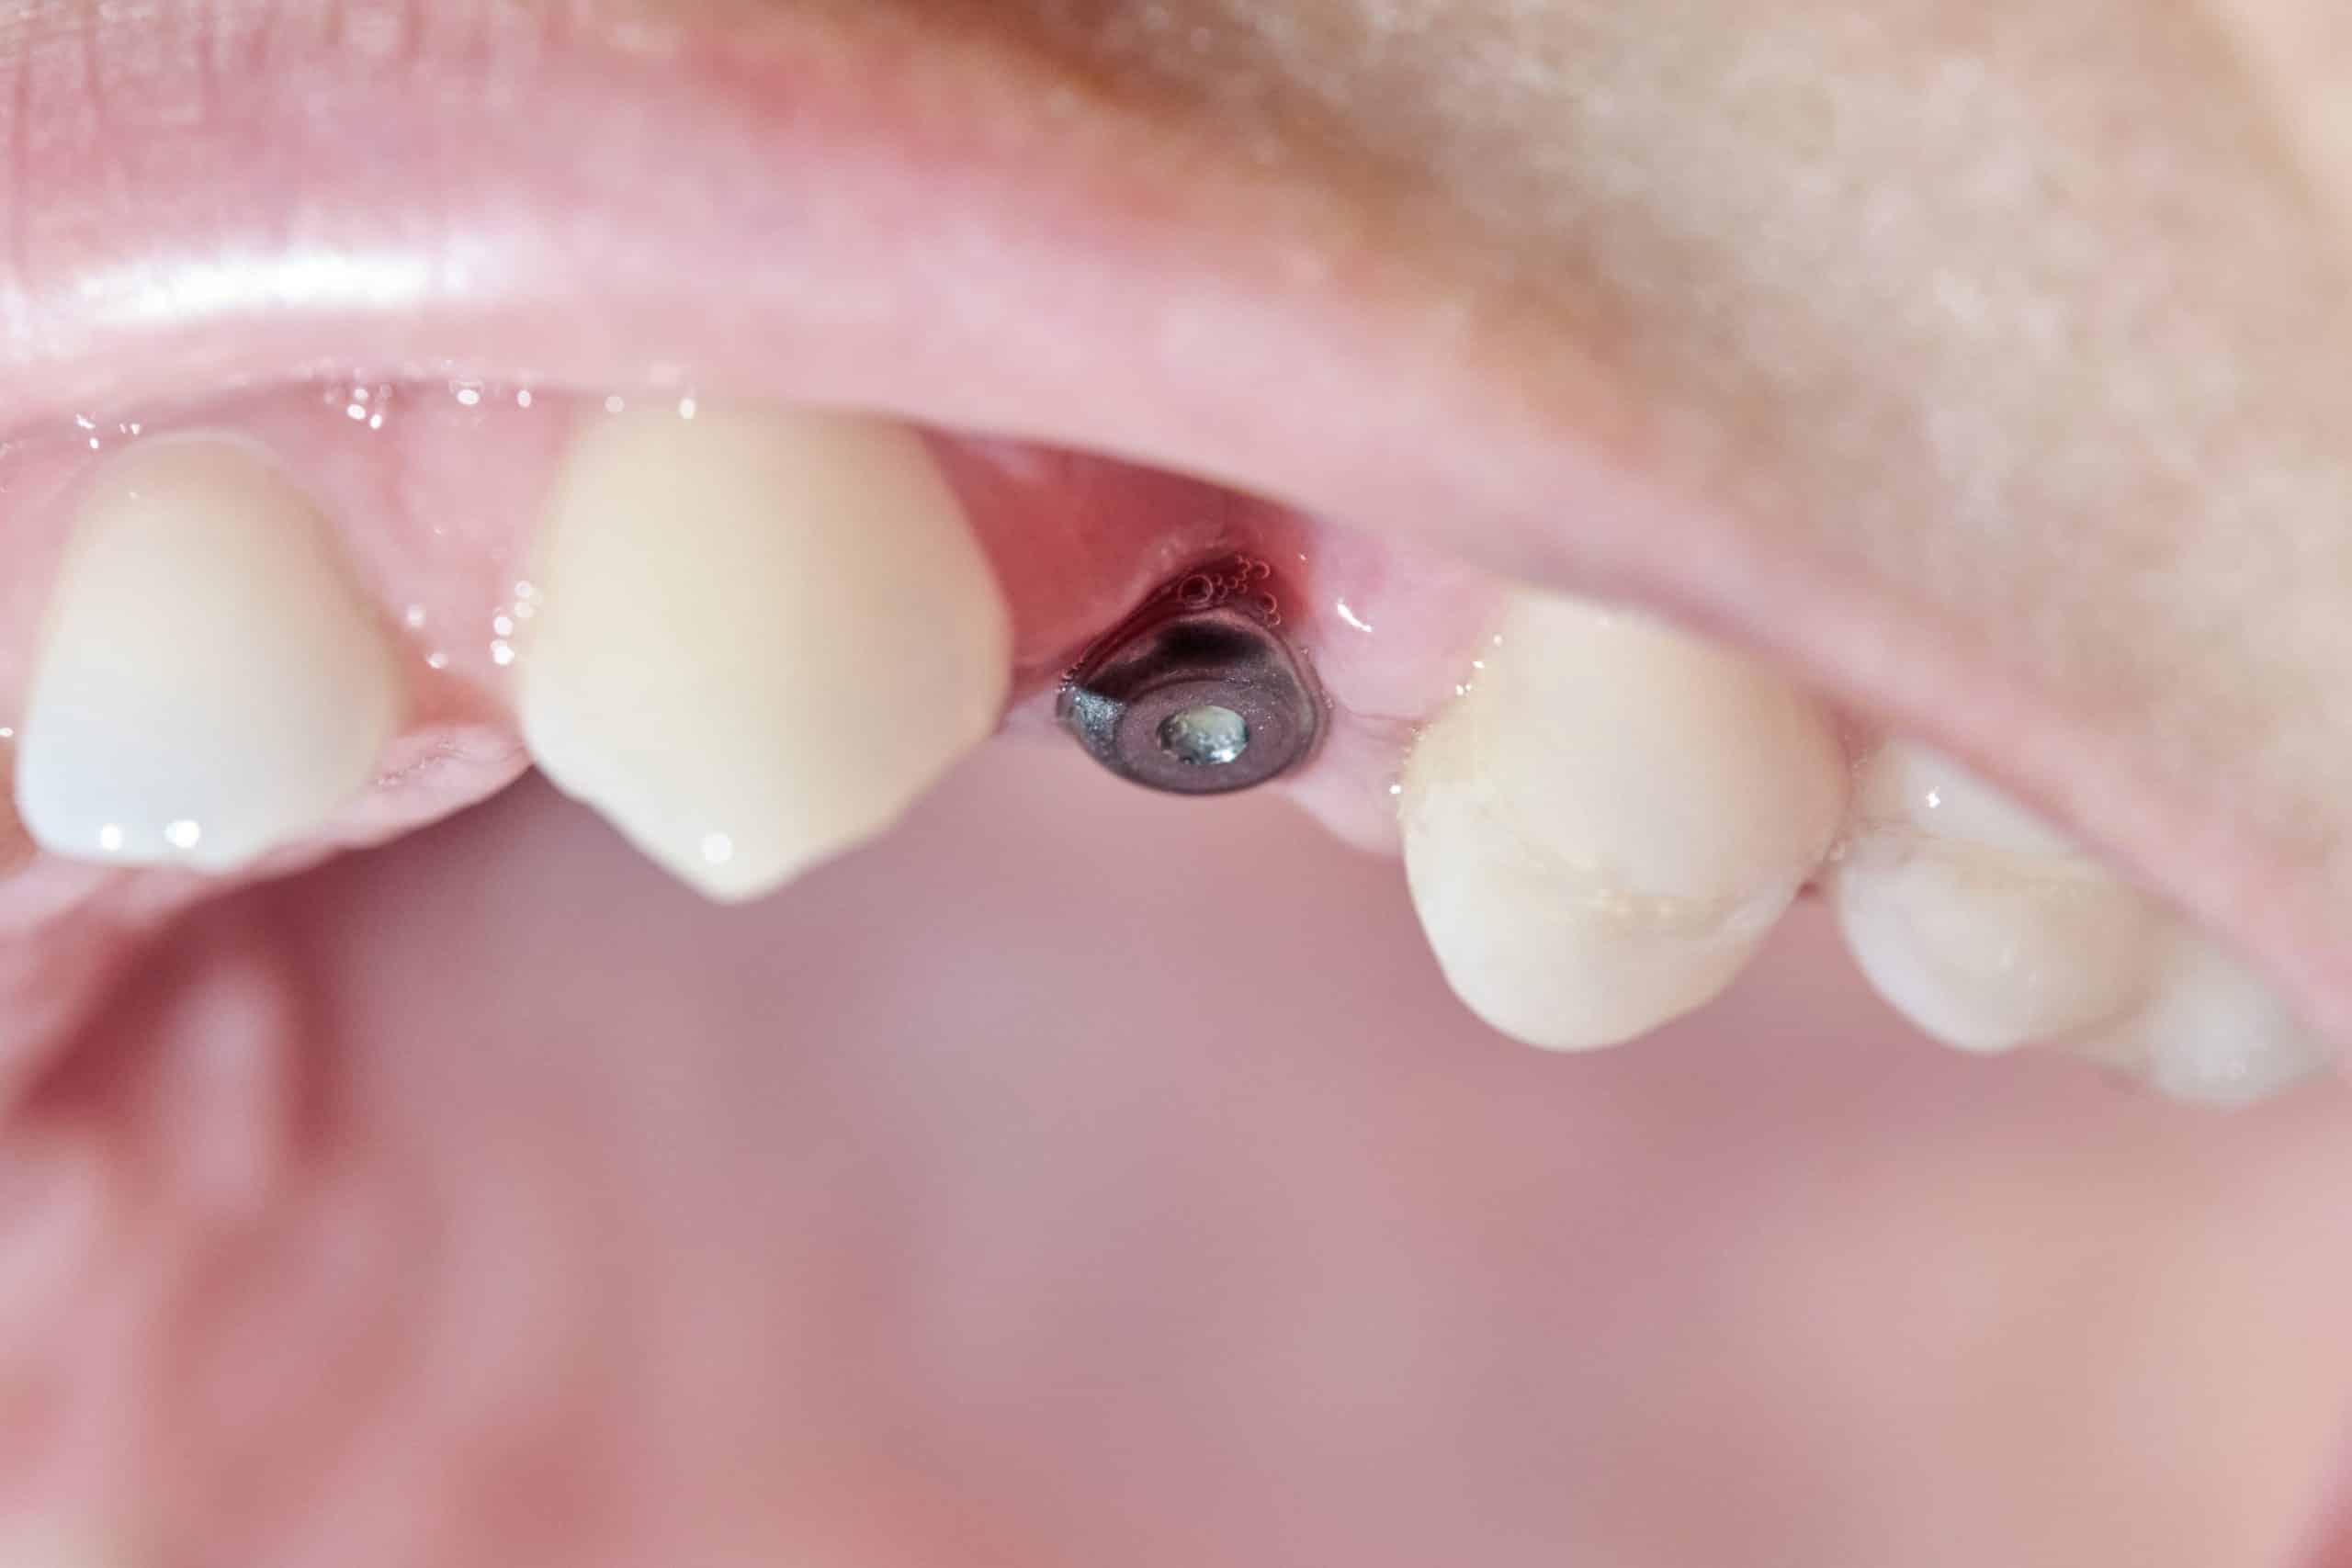 Síntomas de rechazo de un implante dental